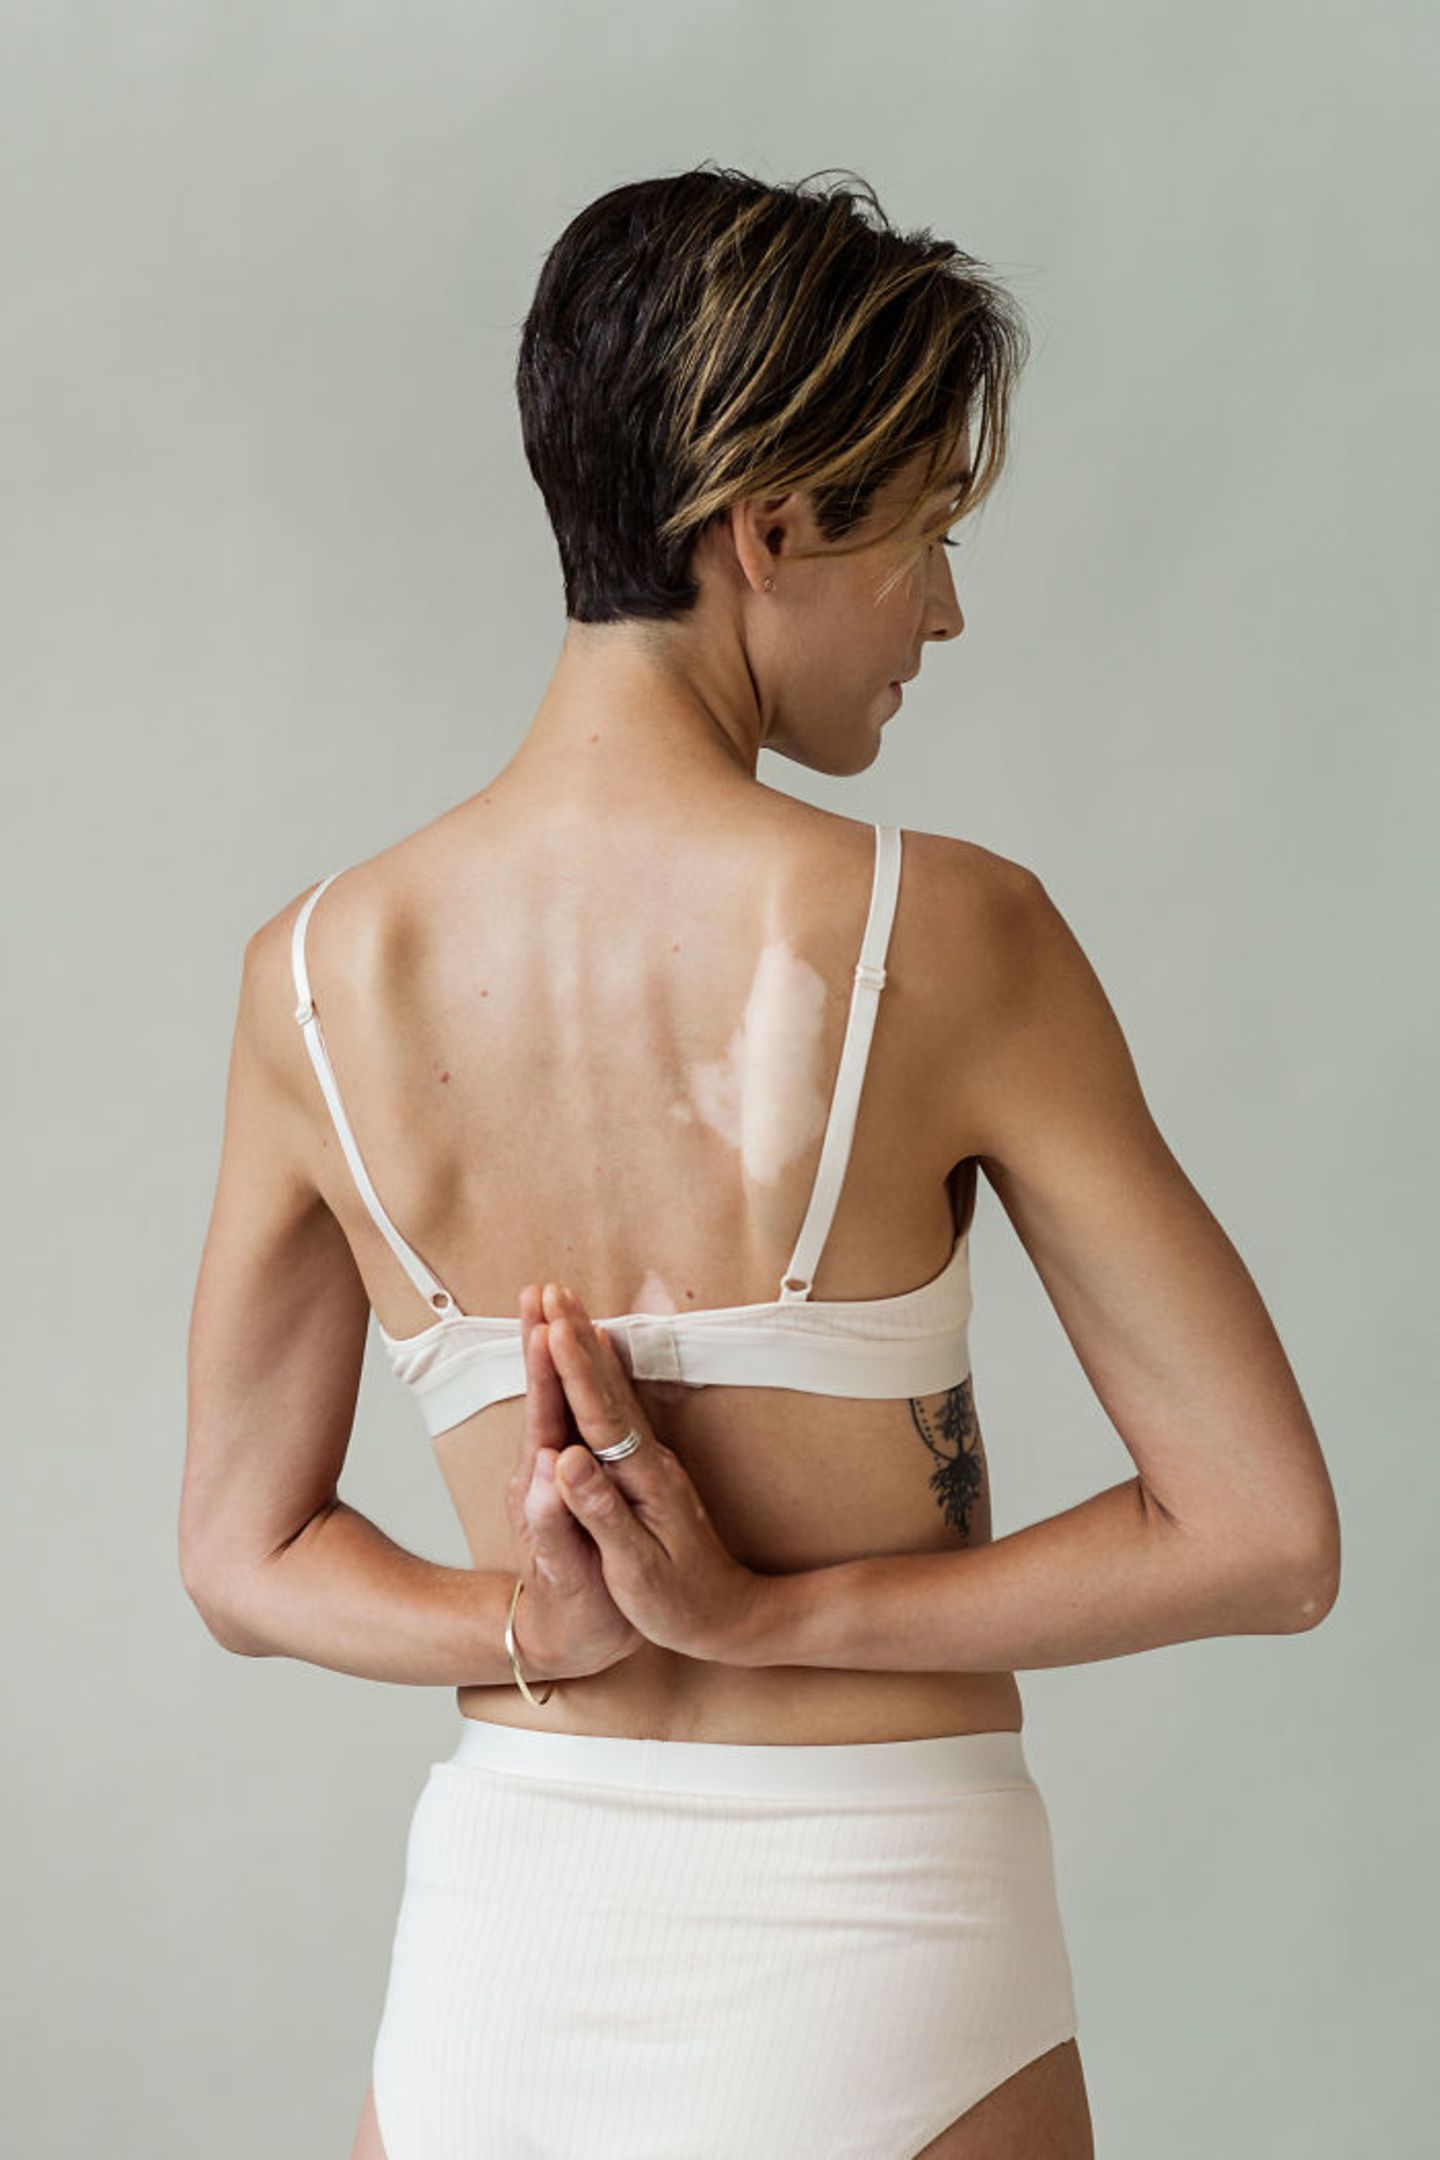 Einzigartig! Diese Fotos feiern die Schönheit von Frauen mit Vitiligo